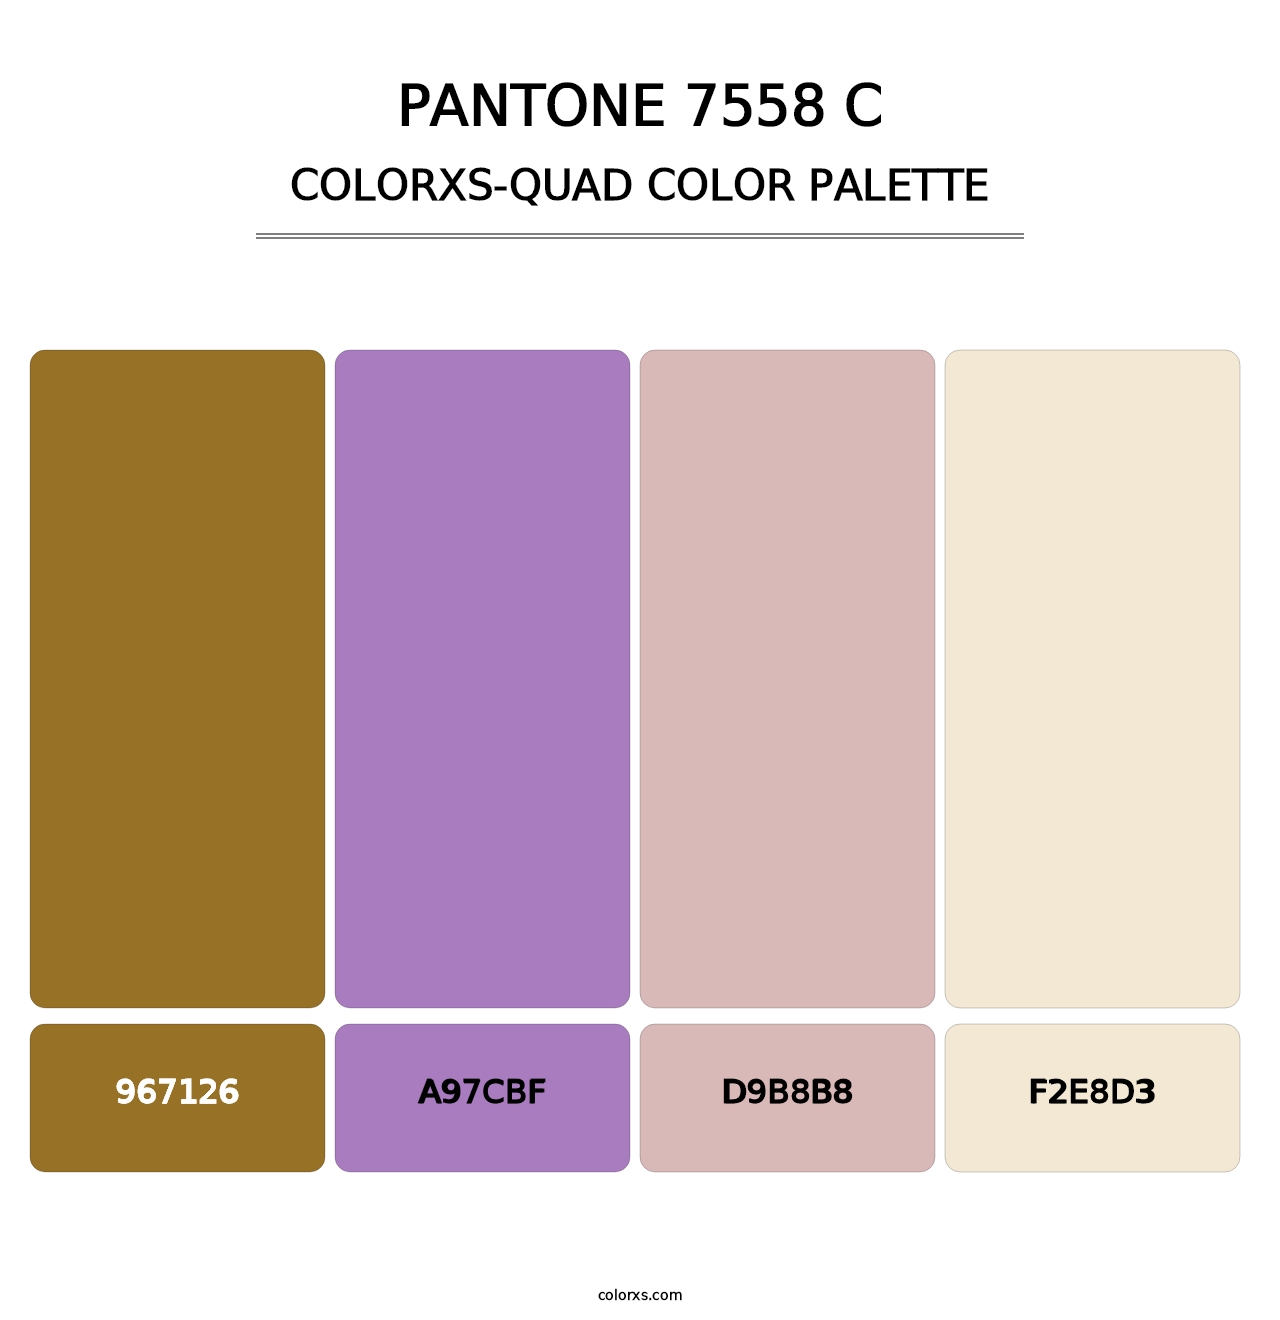 PANTONE 7558 C - Colorxs Quad Palette